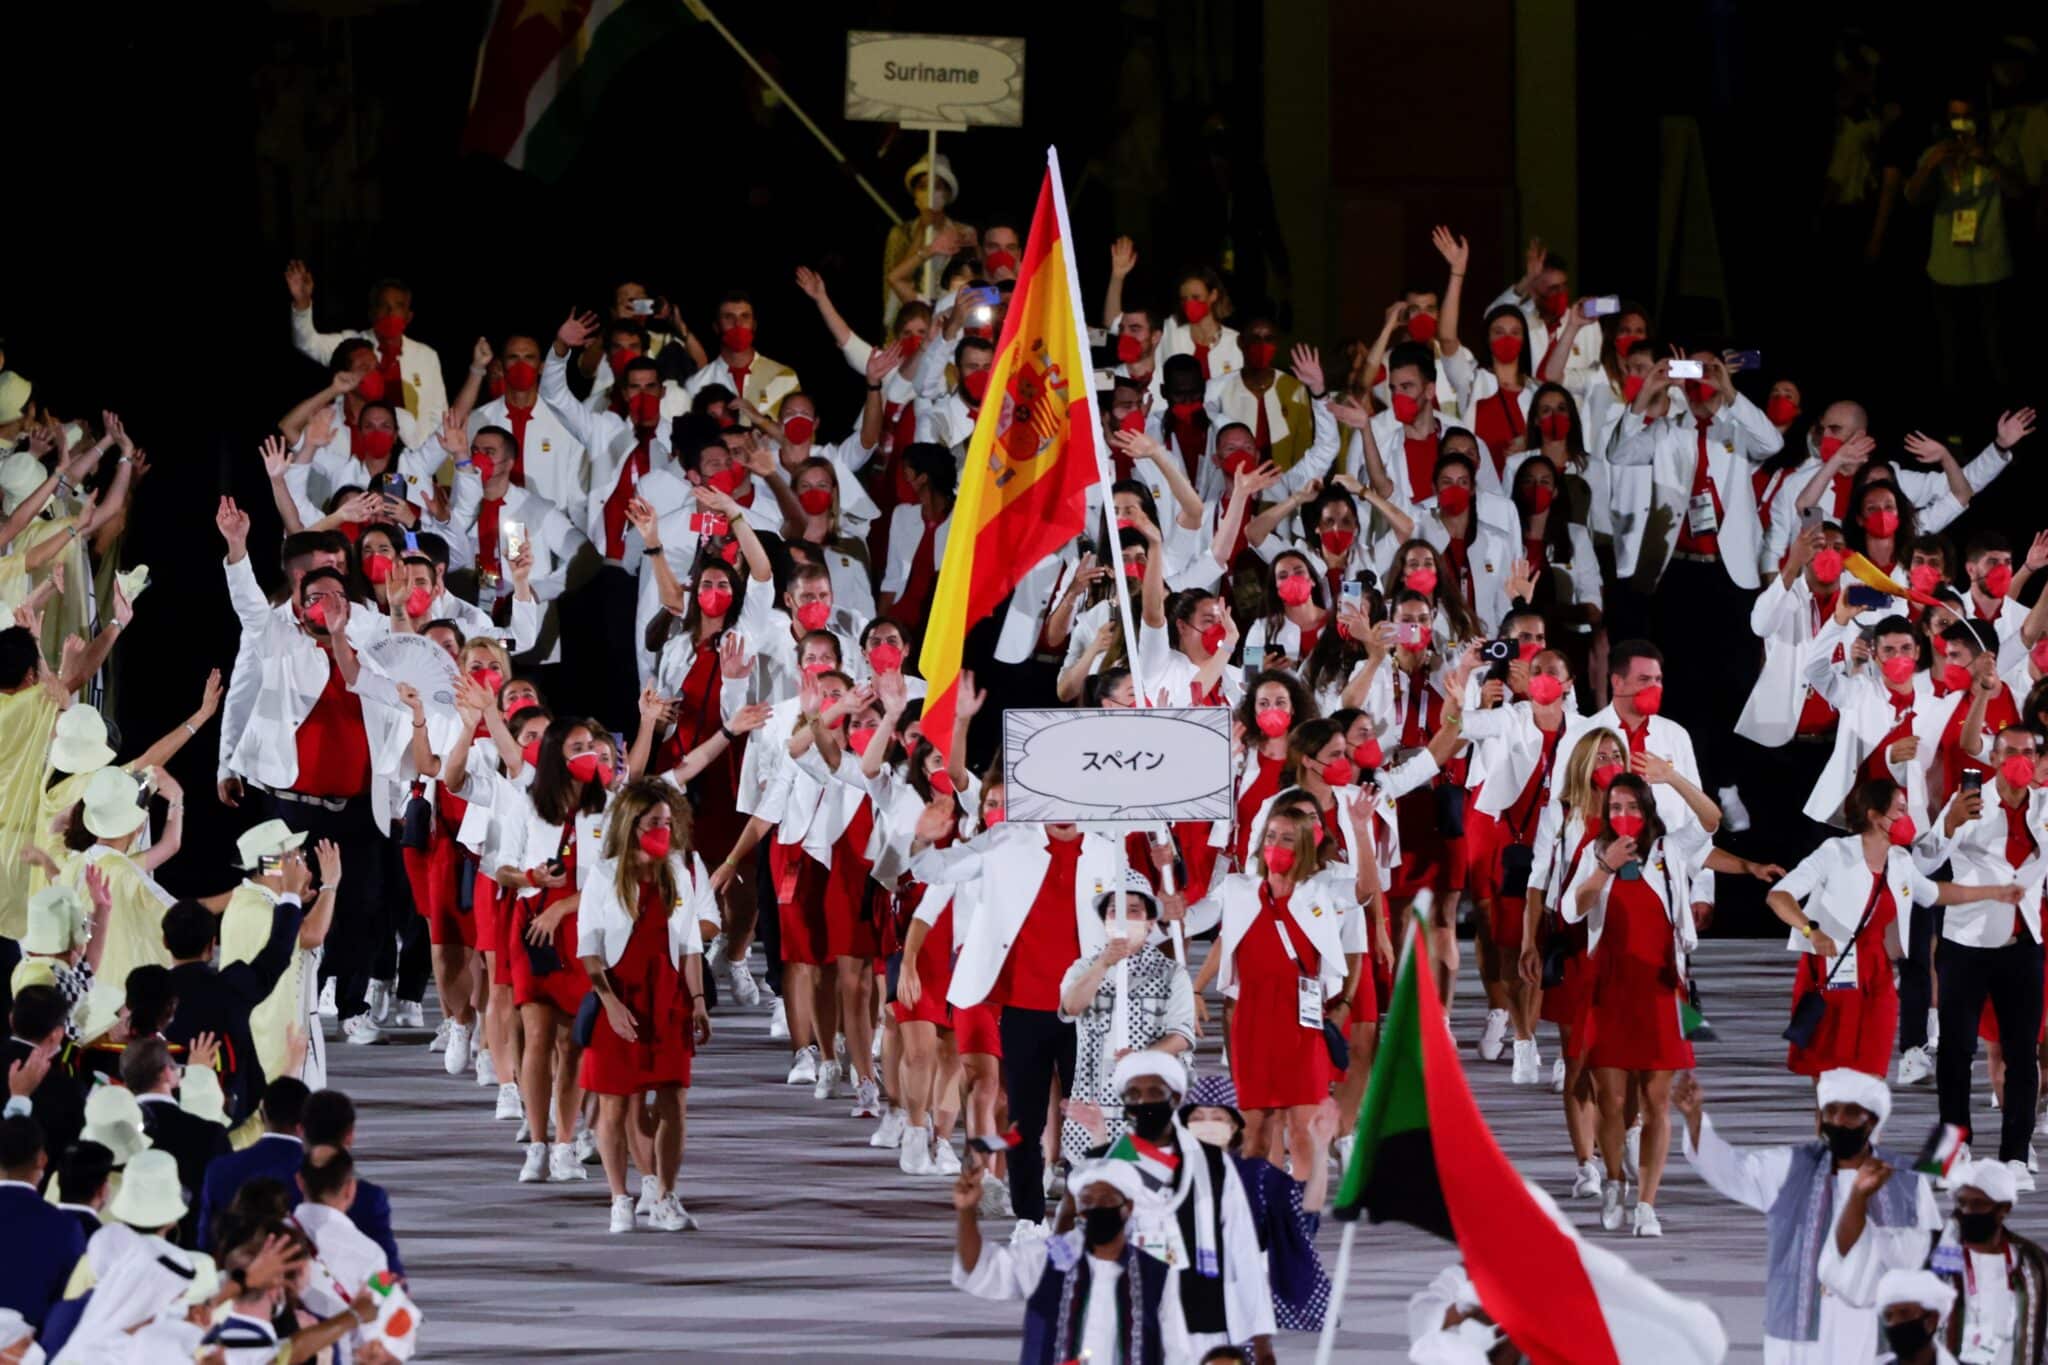 España entra en el Estadio Olímpico en la 88ª posición, siguiendo el alfabeto japonés